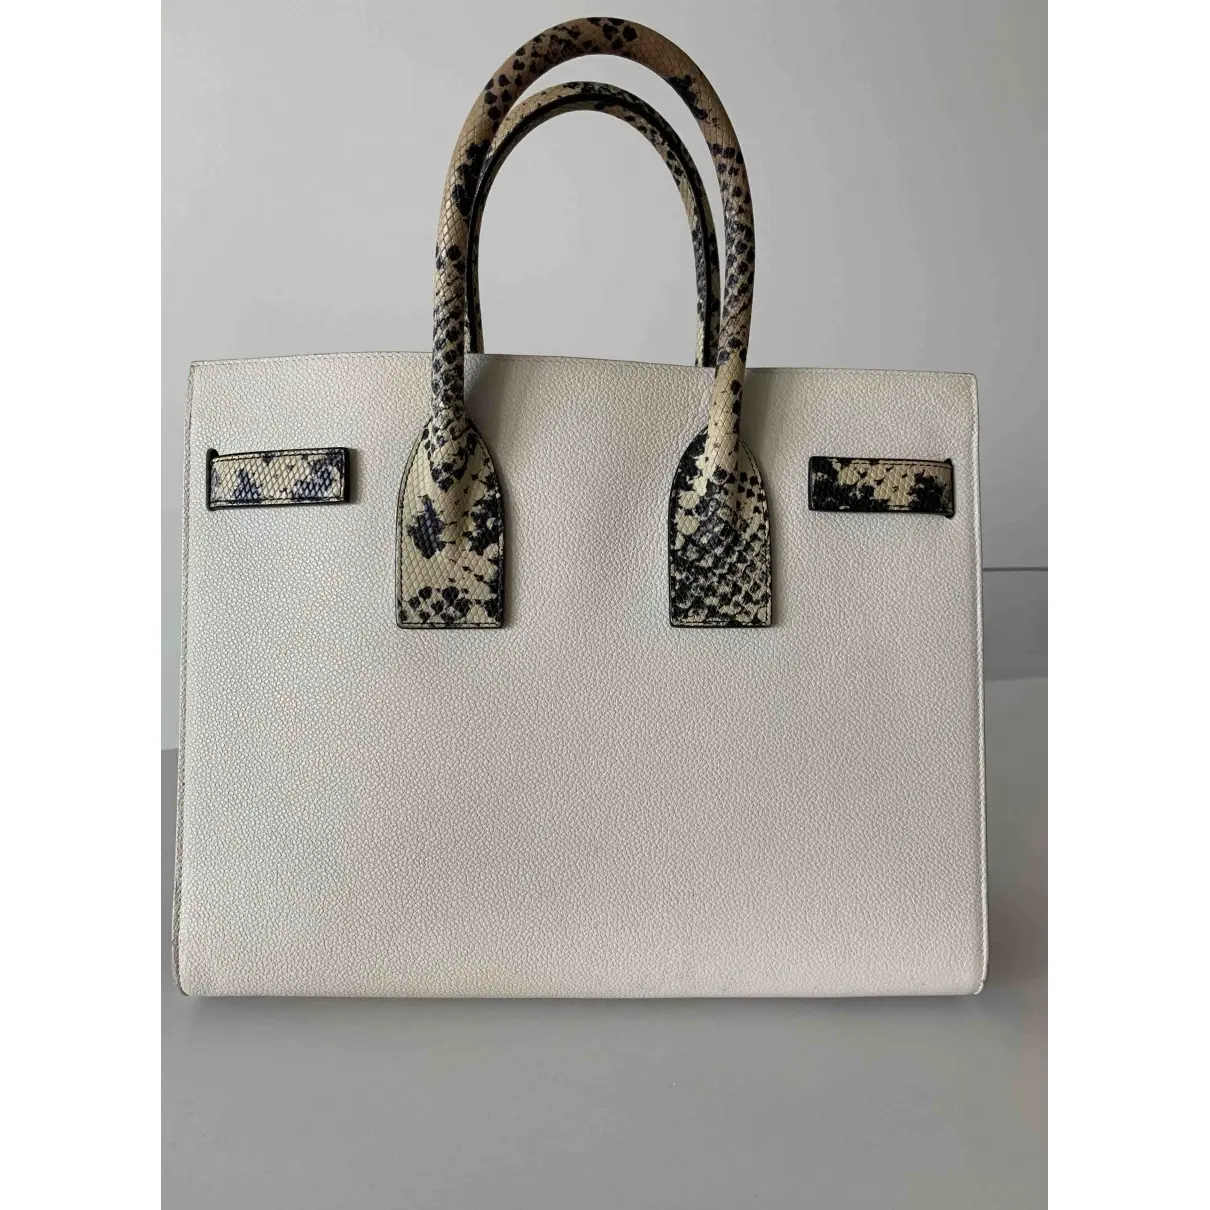 Saint Laurent Sac de Jour leather handbag for sale